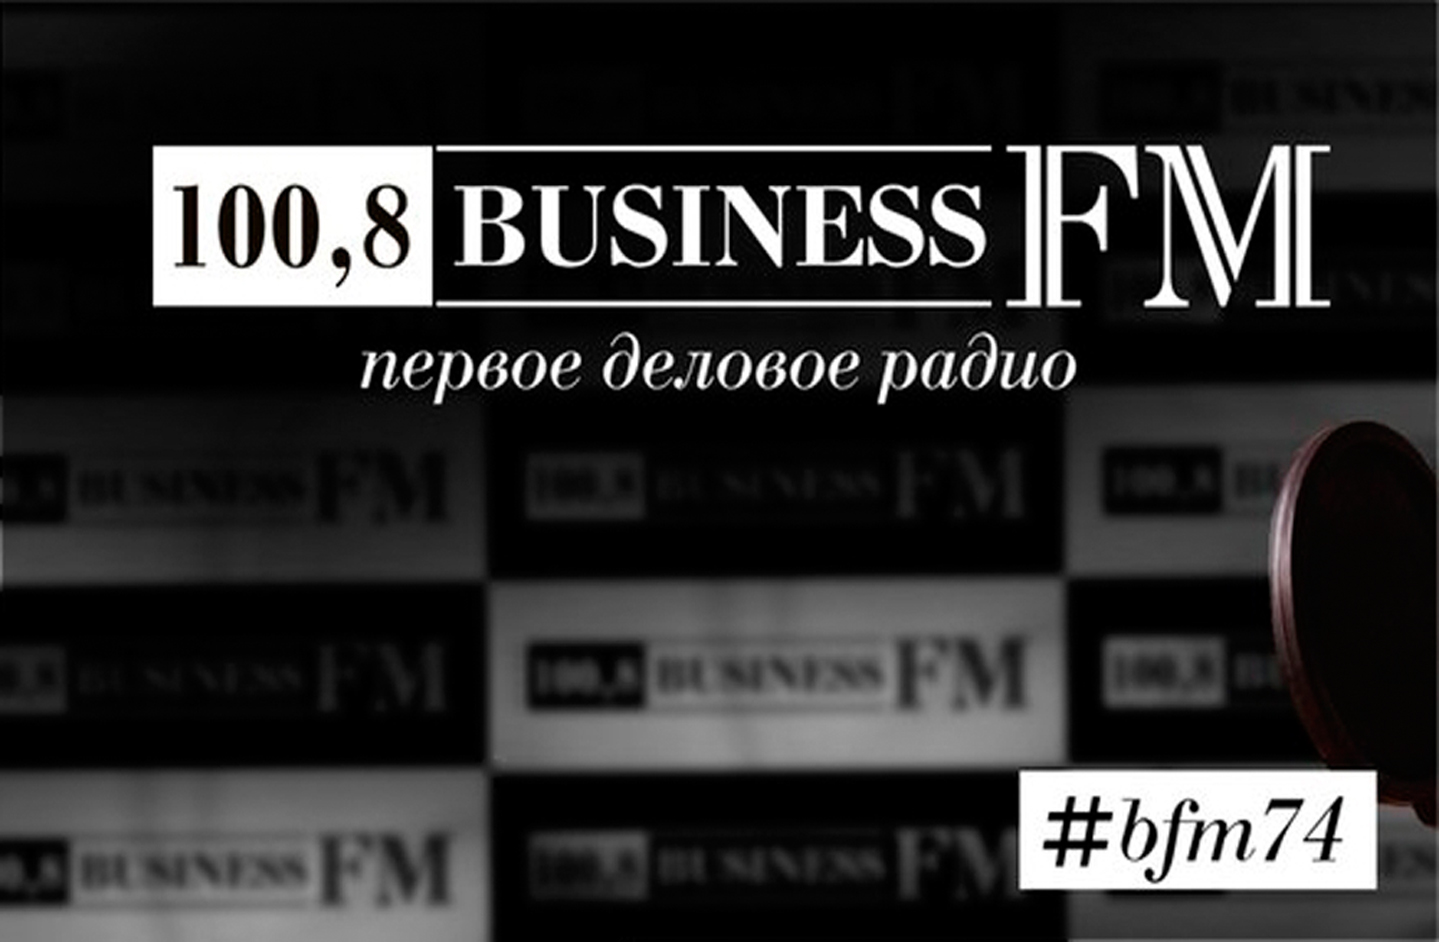 Бизнес радио сайт. Радио бизнес. Бизнес fm. Бизнес ФМ логотип. Радиостанция бизнес ФМ.